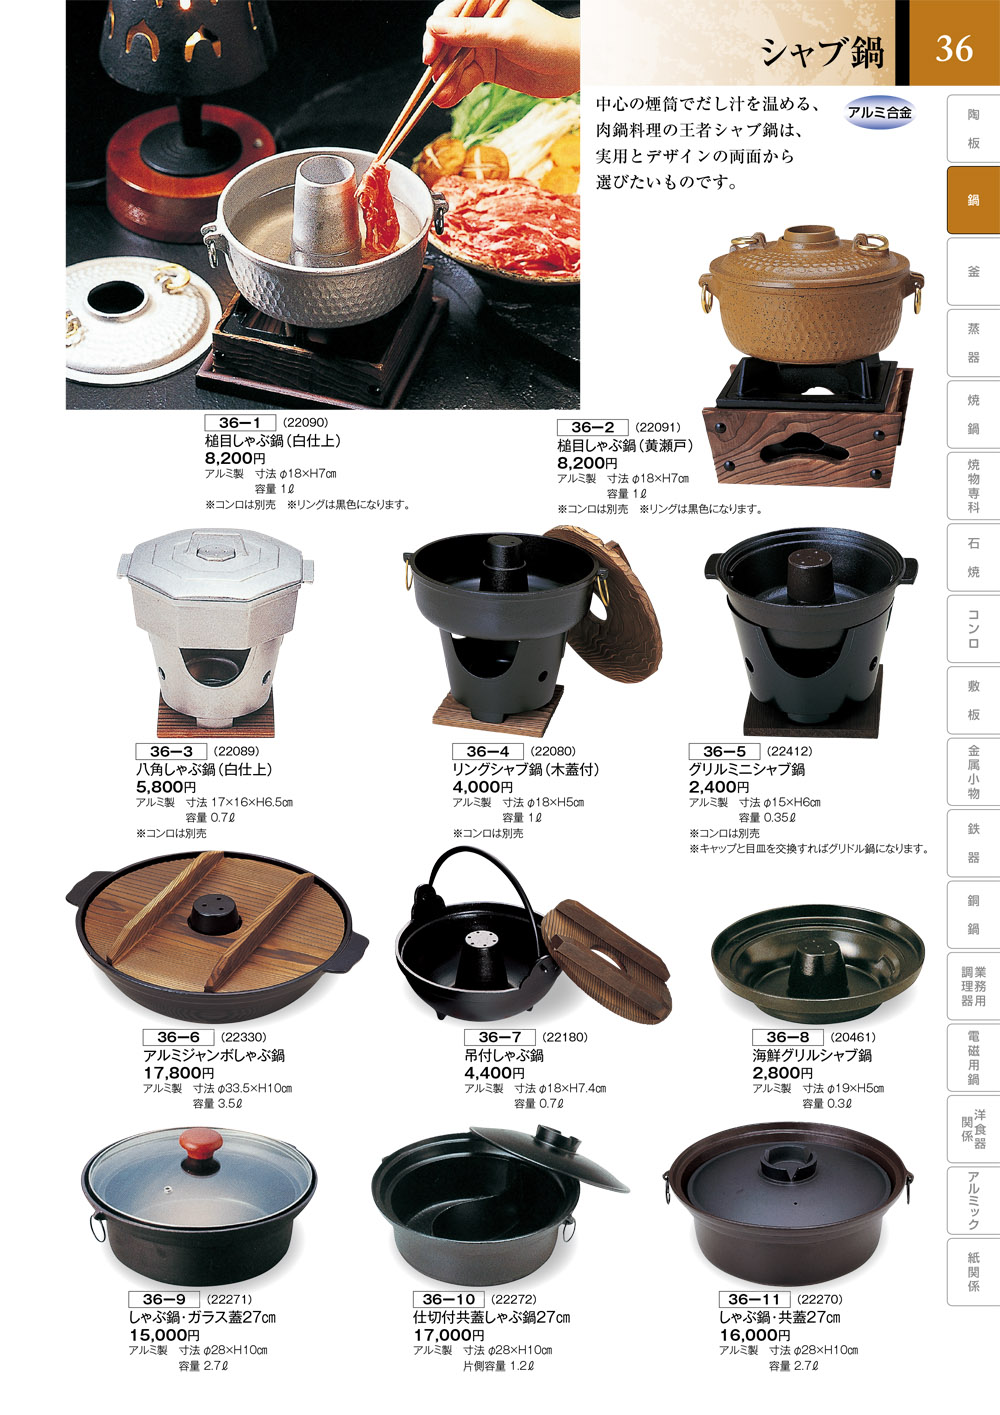 味わい TAKUMI vol9 ページ一覧 | 食器カタログ.com